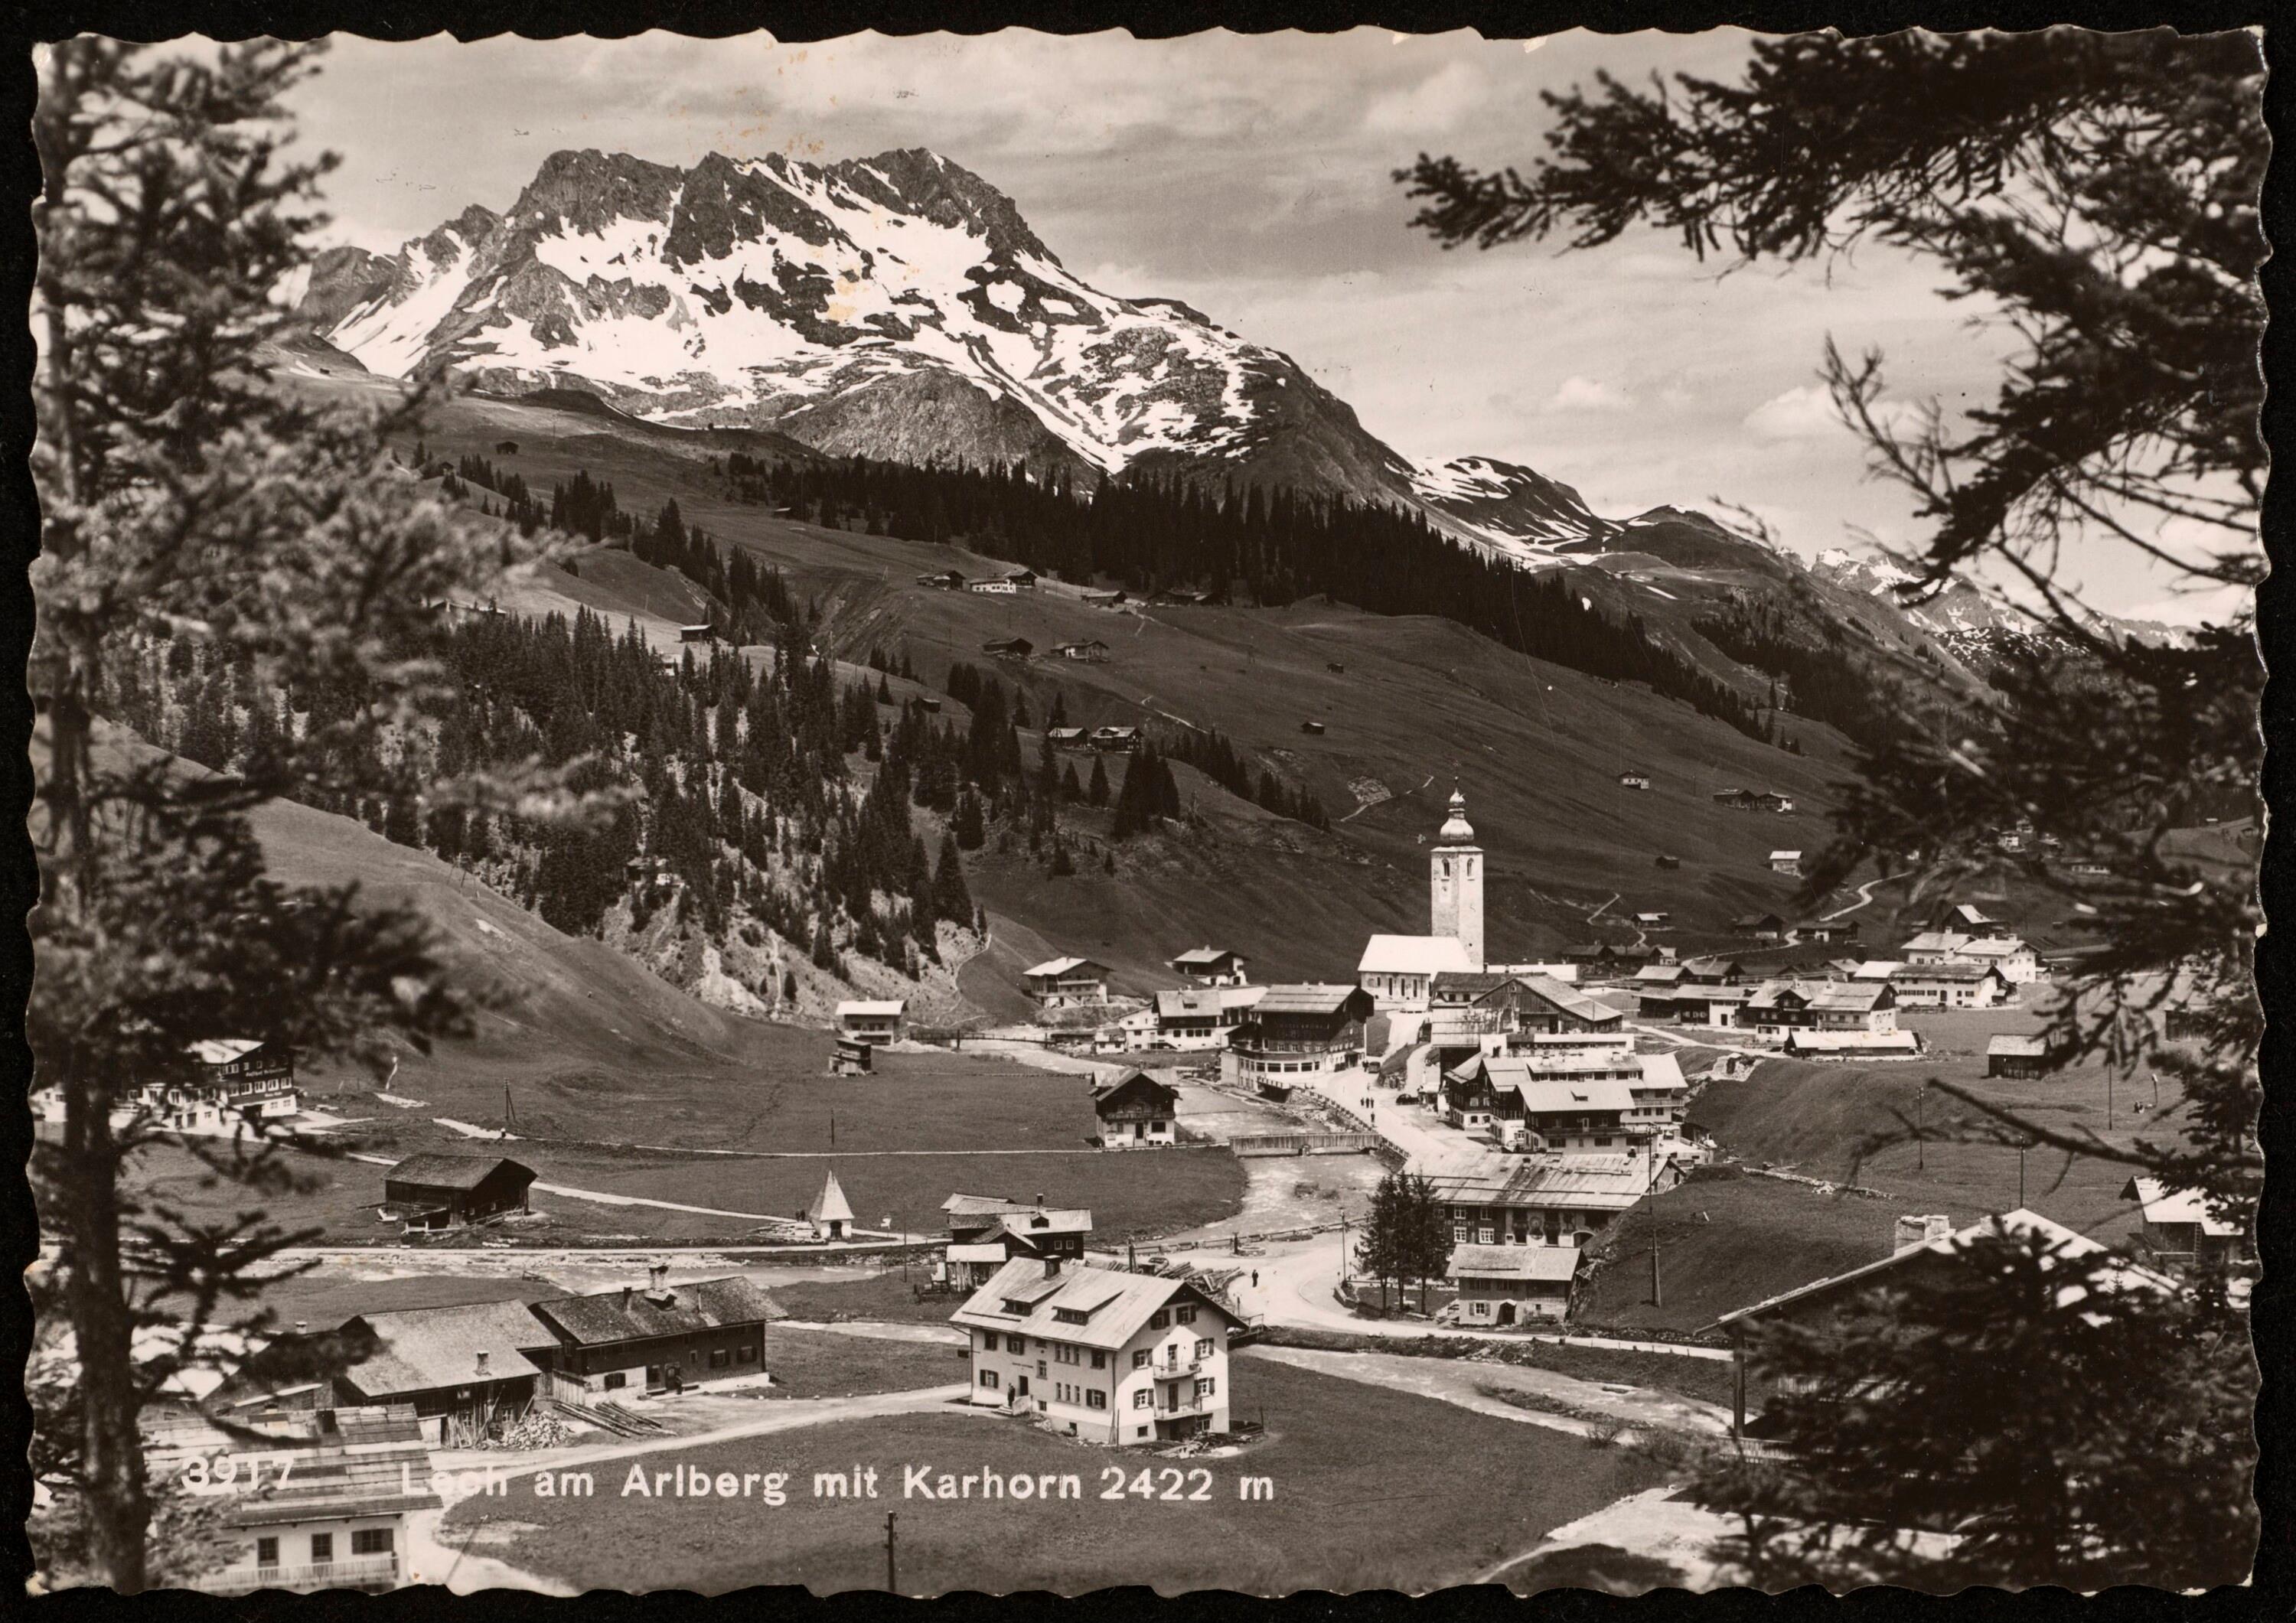 Lech am Arlberg mit Karhorn 2422 m></div>


    <hr>
    <div class=